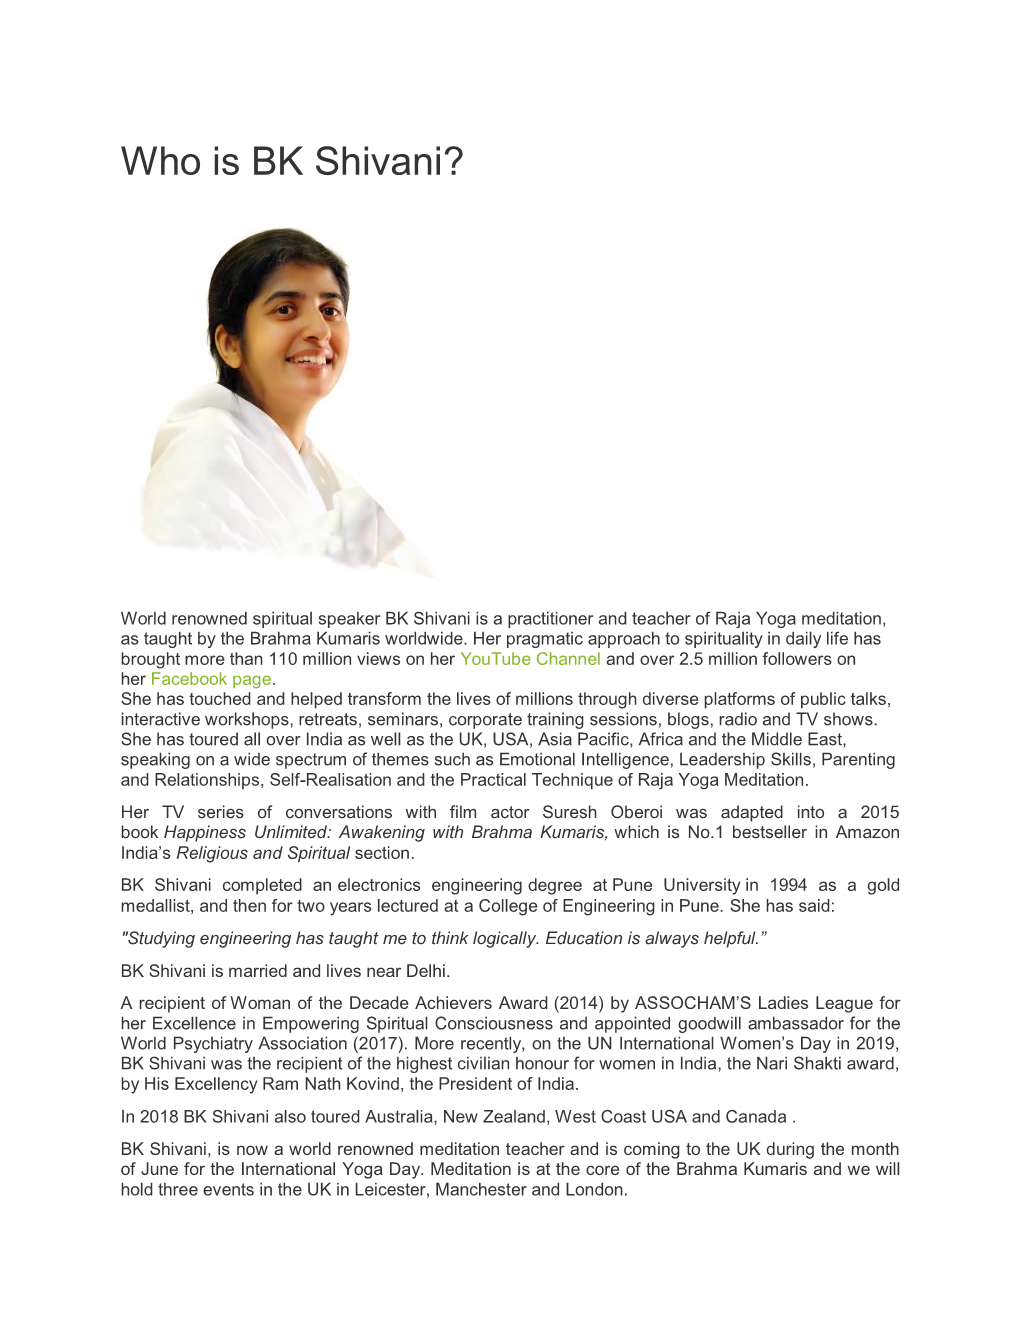 Who Is BK Shivani?